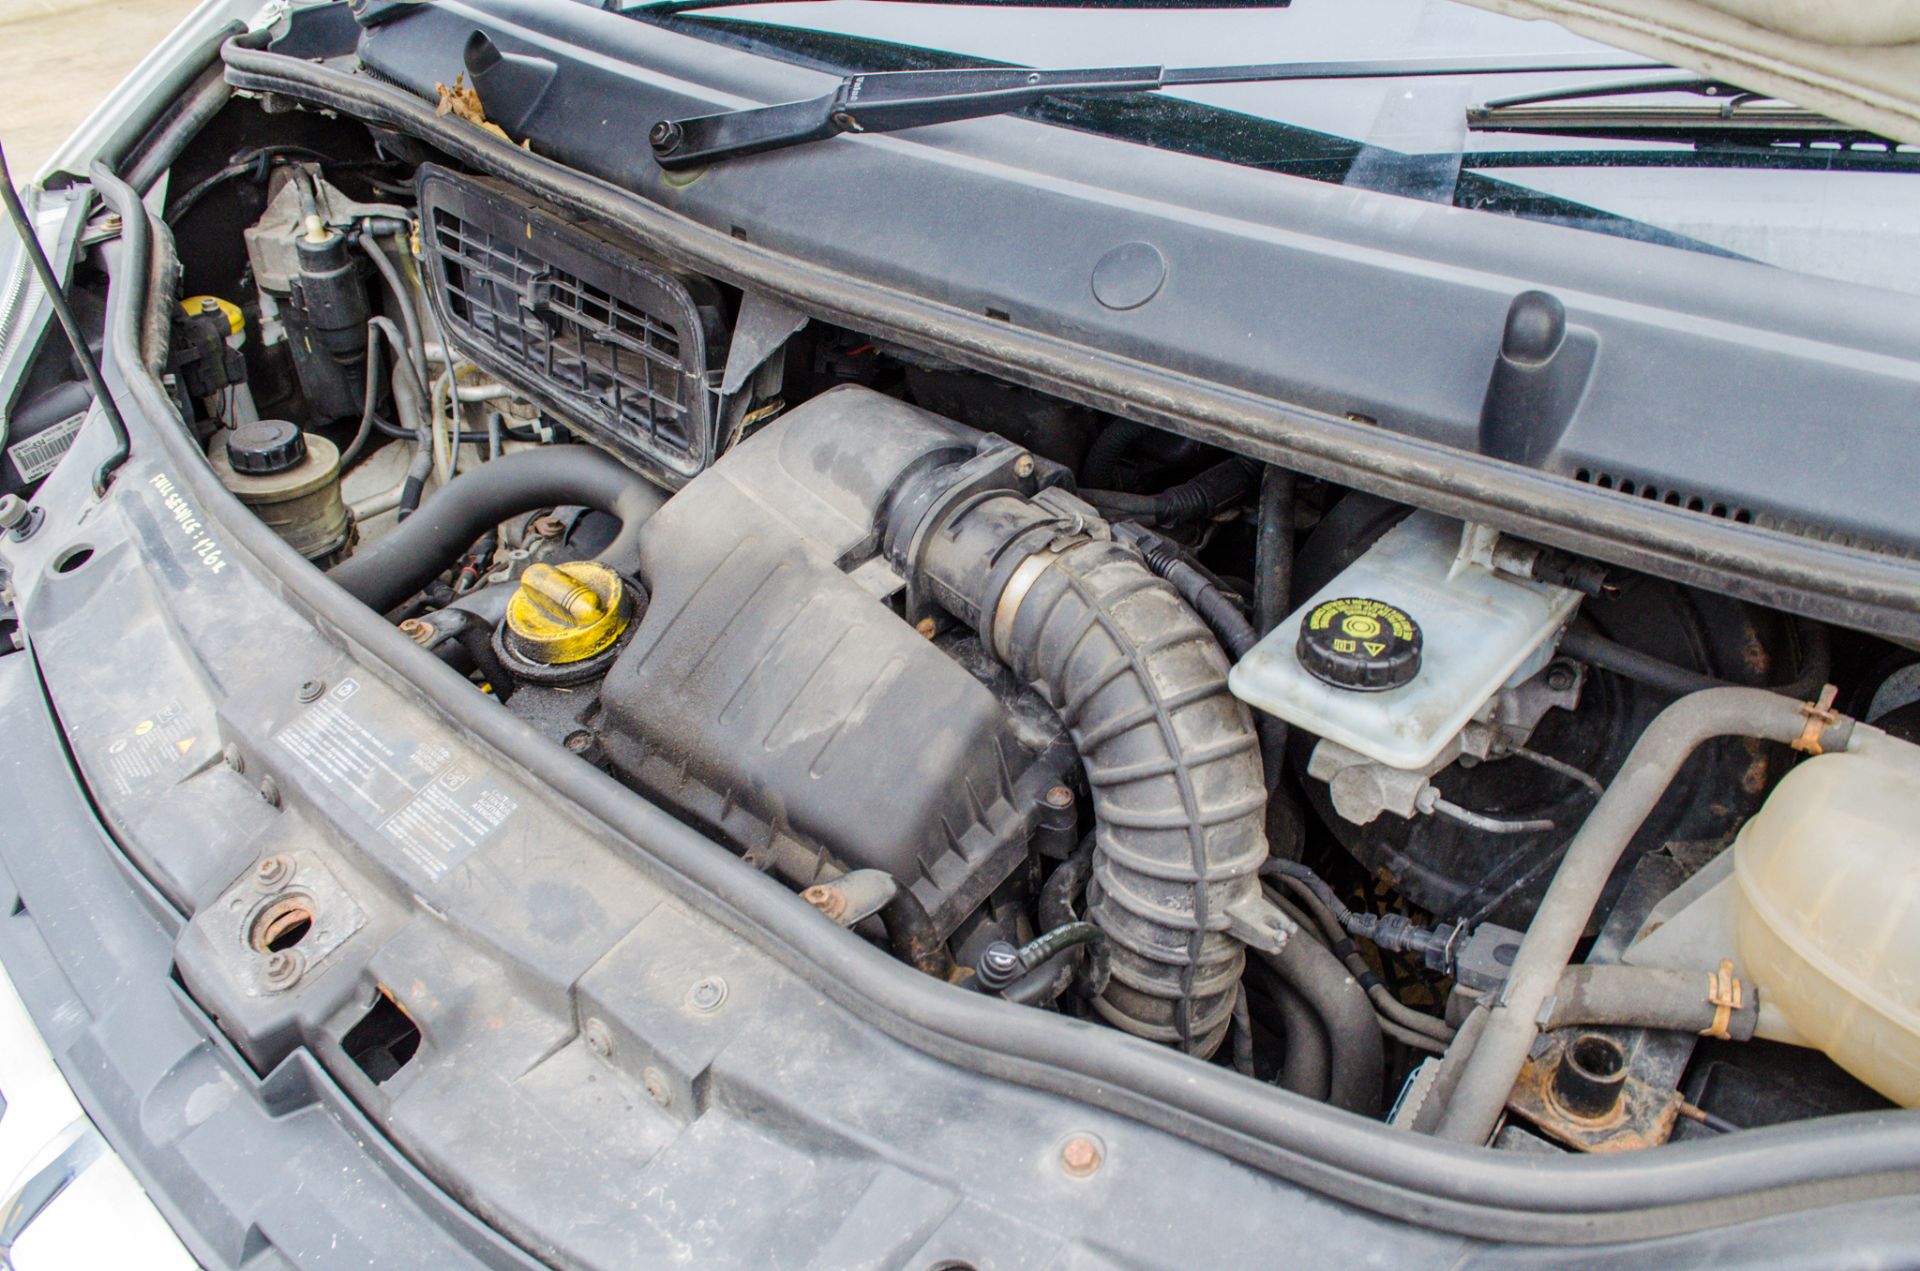 Vauxhall Vivaro 2900 cdti 2.0 diesel LWB panel van Reg No: PO14 UWM Date of Registration: 18/03/2014 - Image 19 of 27